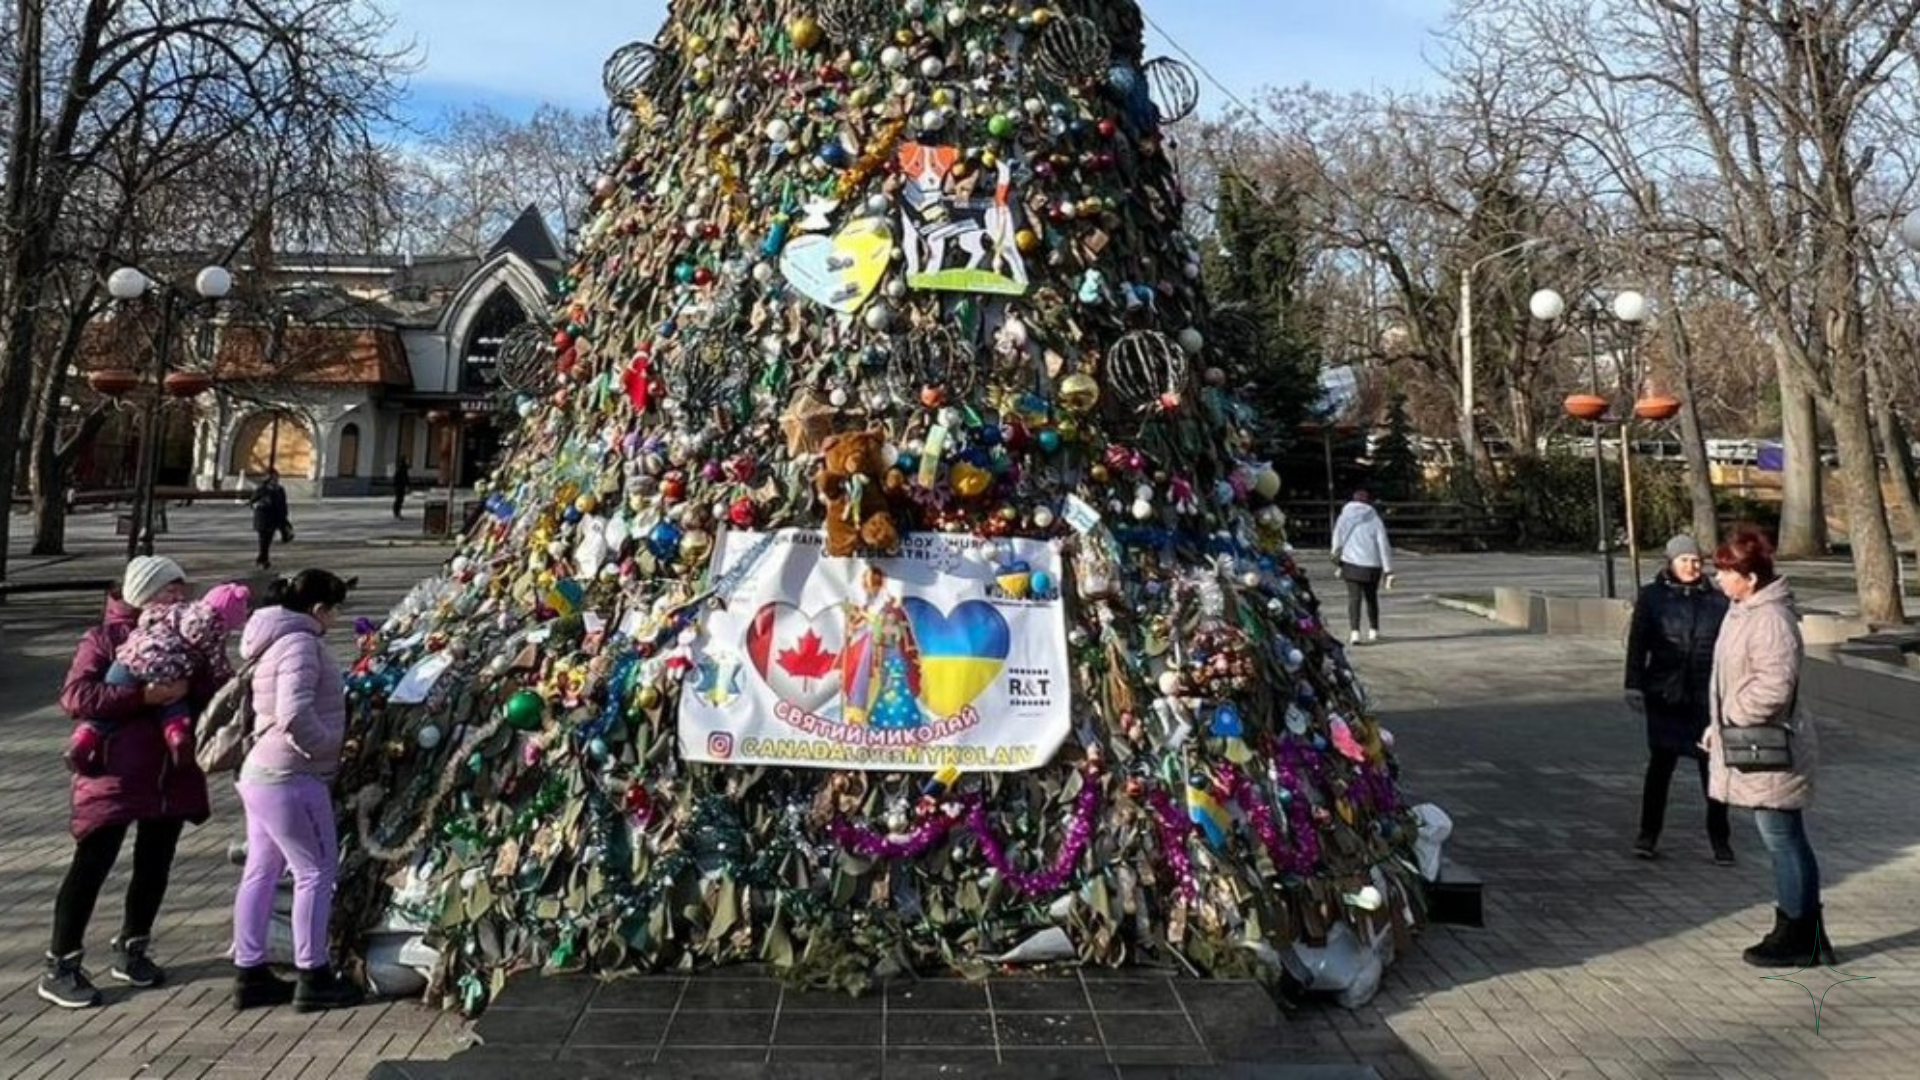 DW | Ucranianos na Alemanha: “Este vai ser um Natal sem paz”